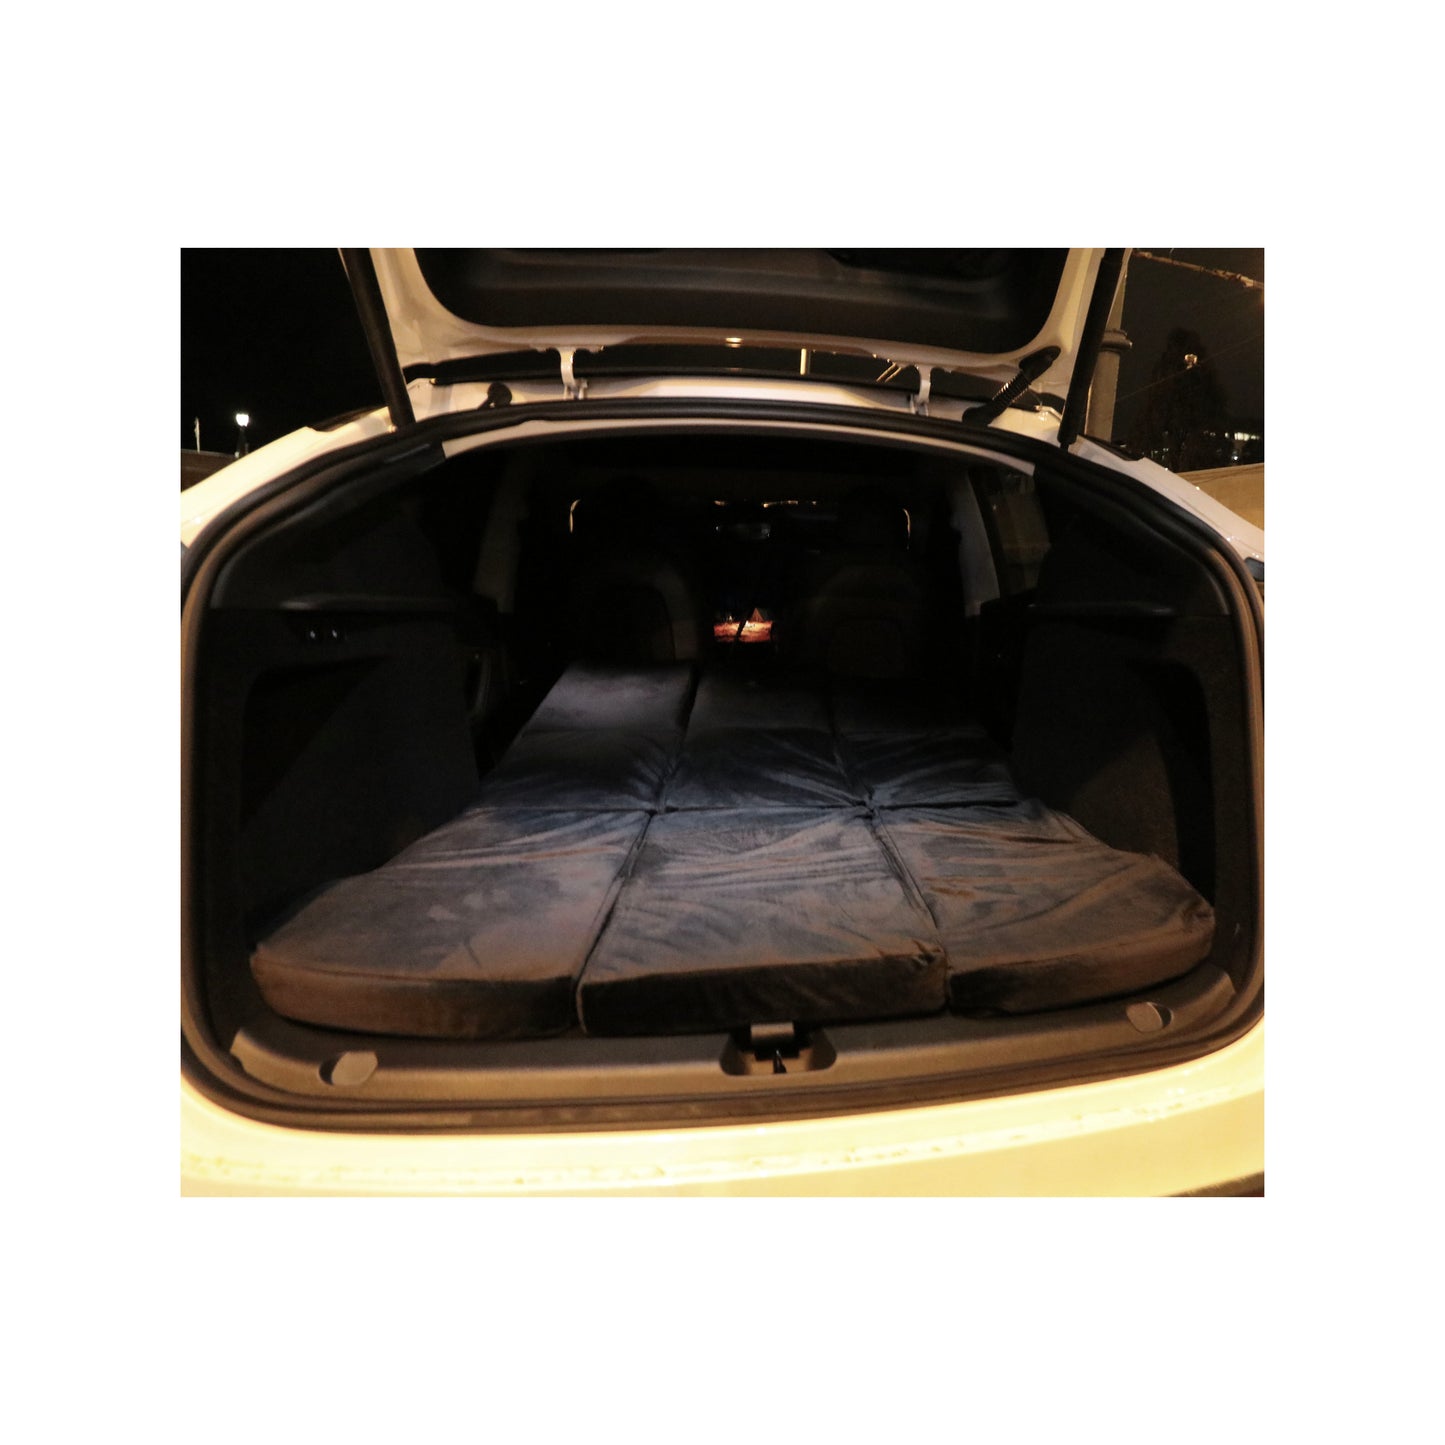 EV-MATS Basic CAMP SET per Tesla Model 3 include il materasso Tesla, la borsa impermeabile che si adatta nel bagagliaio posteriore della Tesla Model 3, un lenzuolo, un piumone, 2 cuscini e una federa